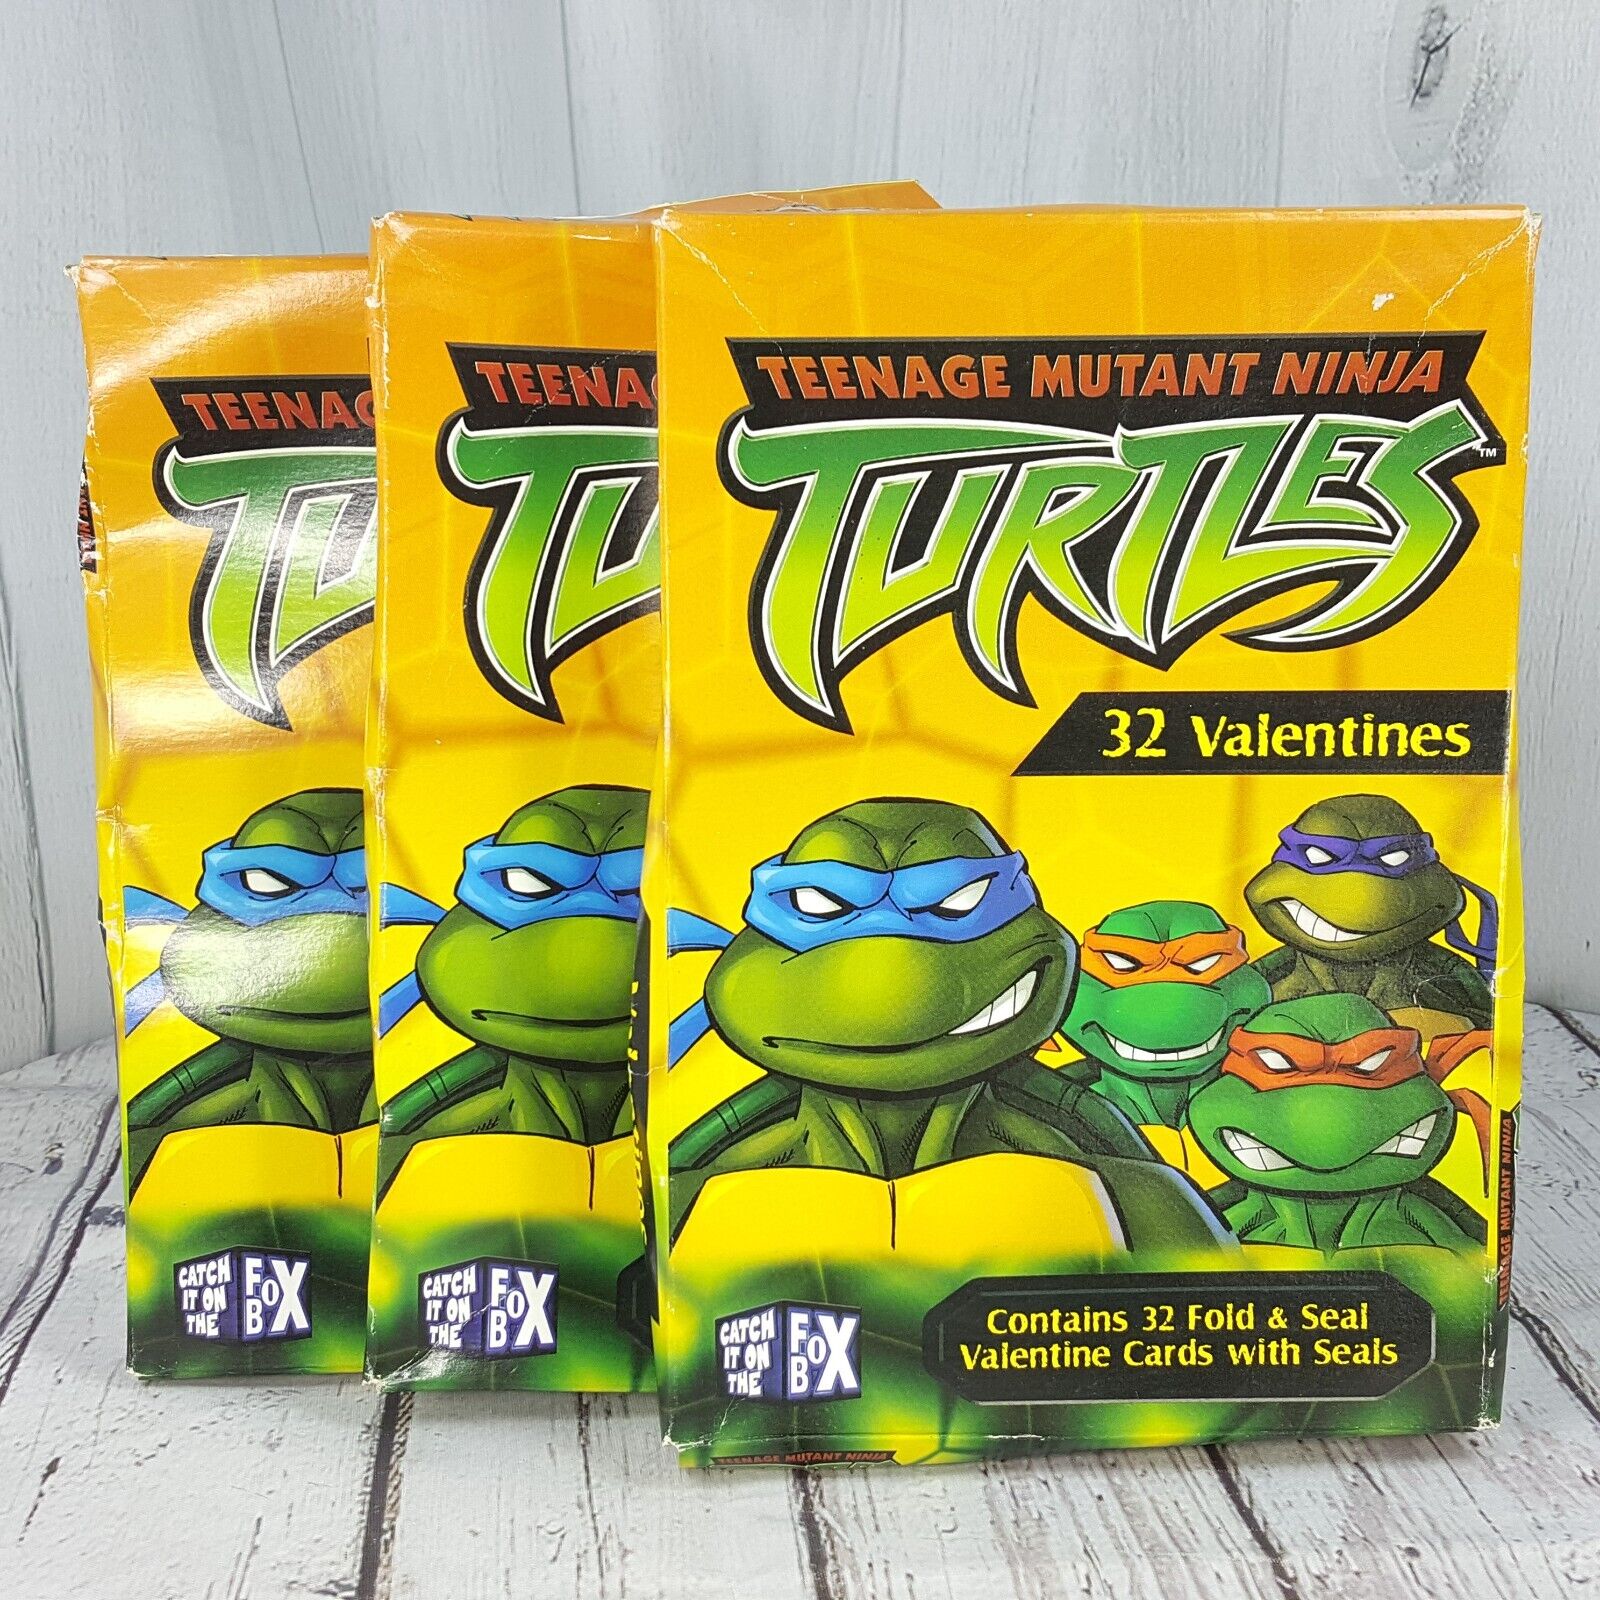 Vintage Teenage Mutant Ninja Turtles Fold & Seal Valentine Cards 32 x 3 SEALED